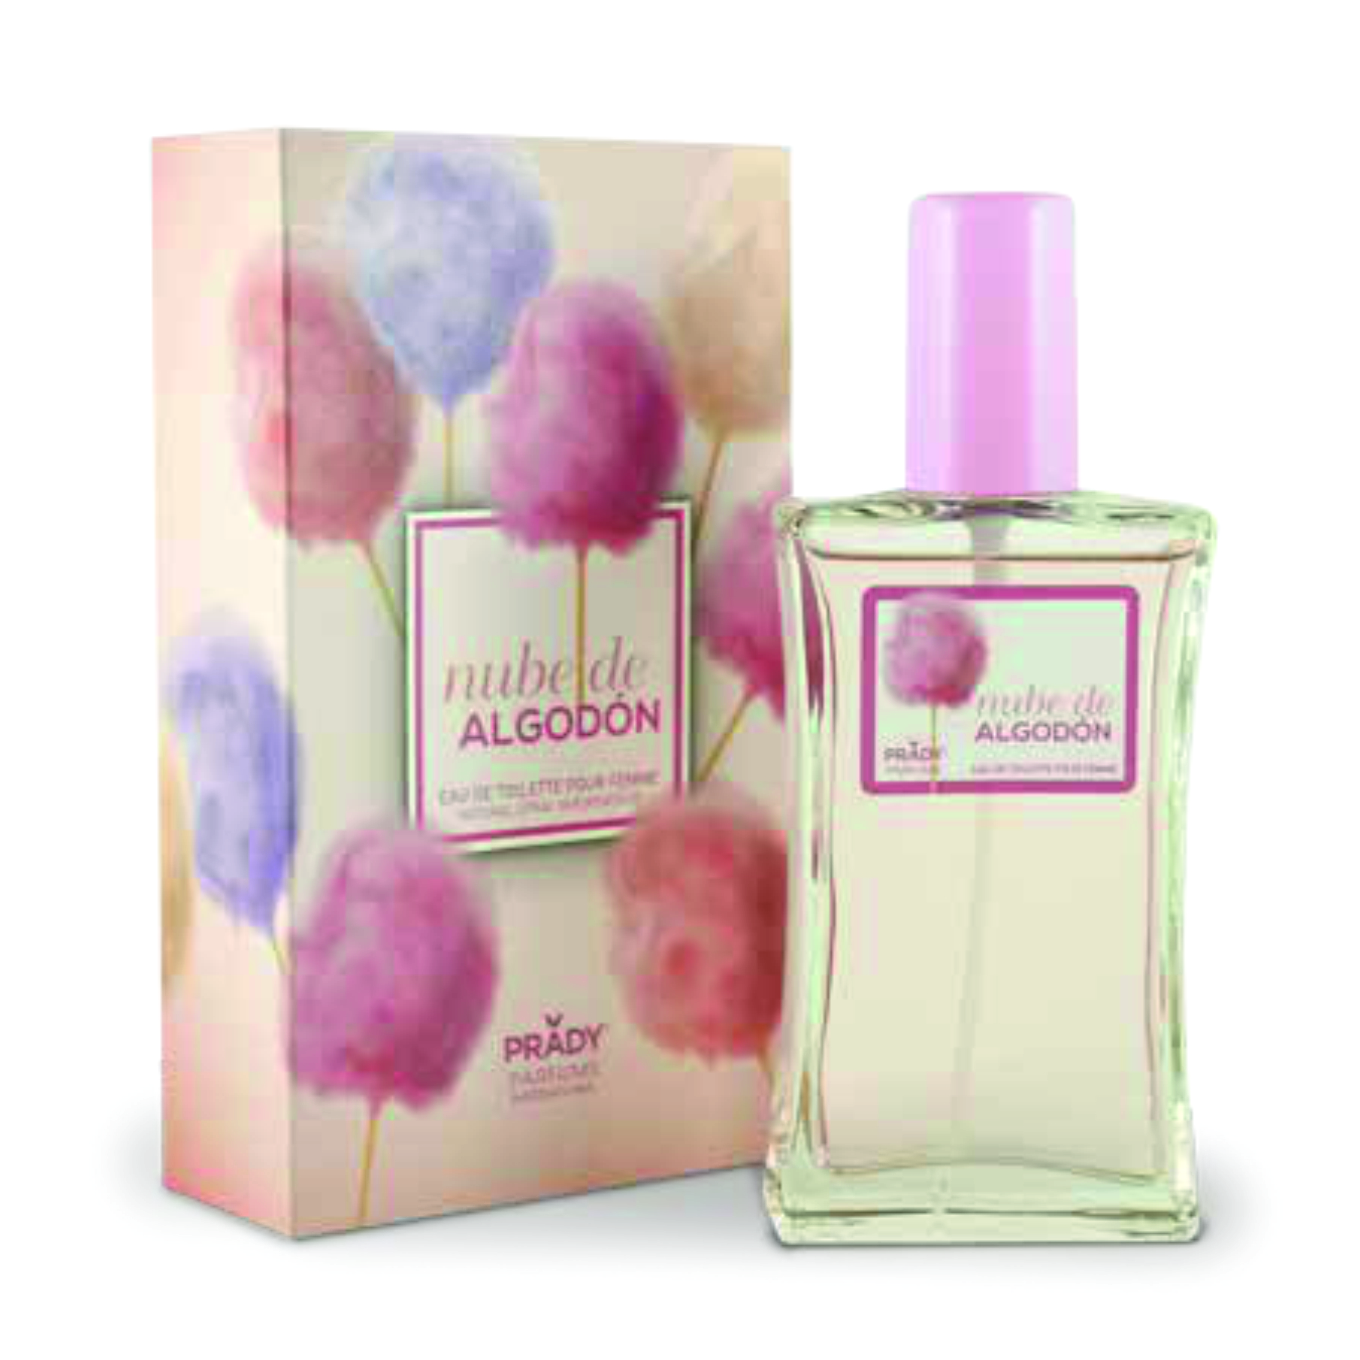 Perfume Nube de Algodón – Prady – Perfumaria online João Simão